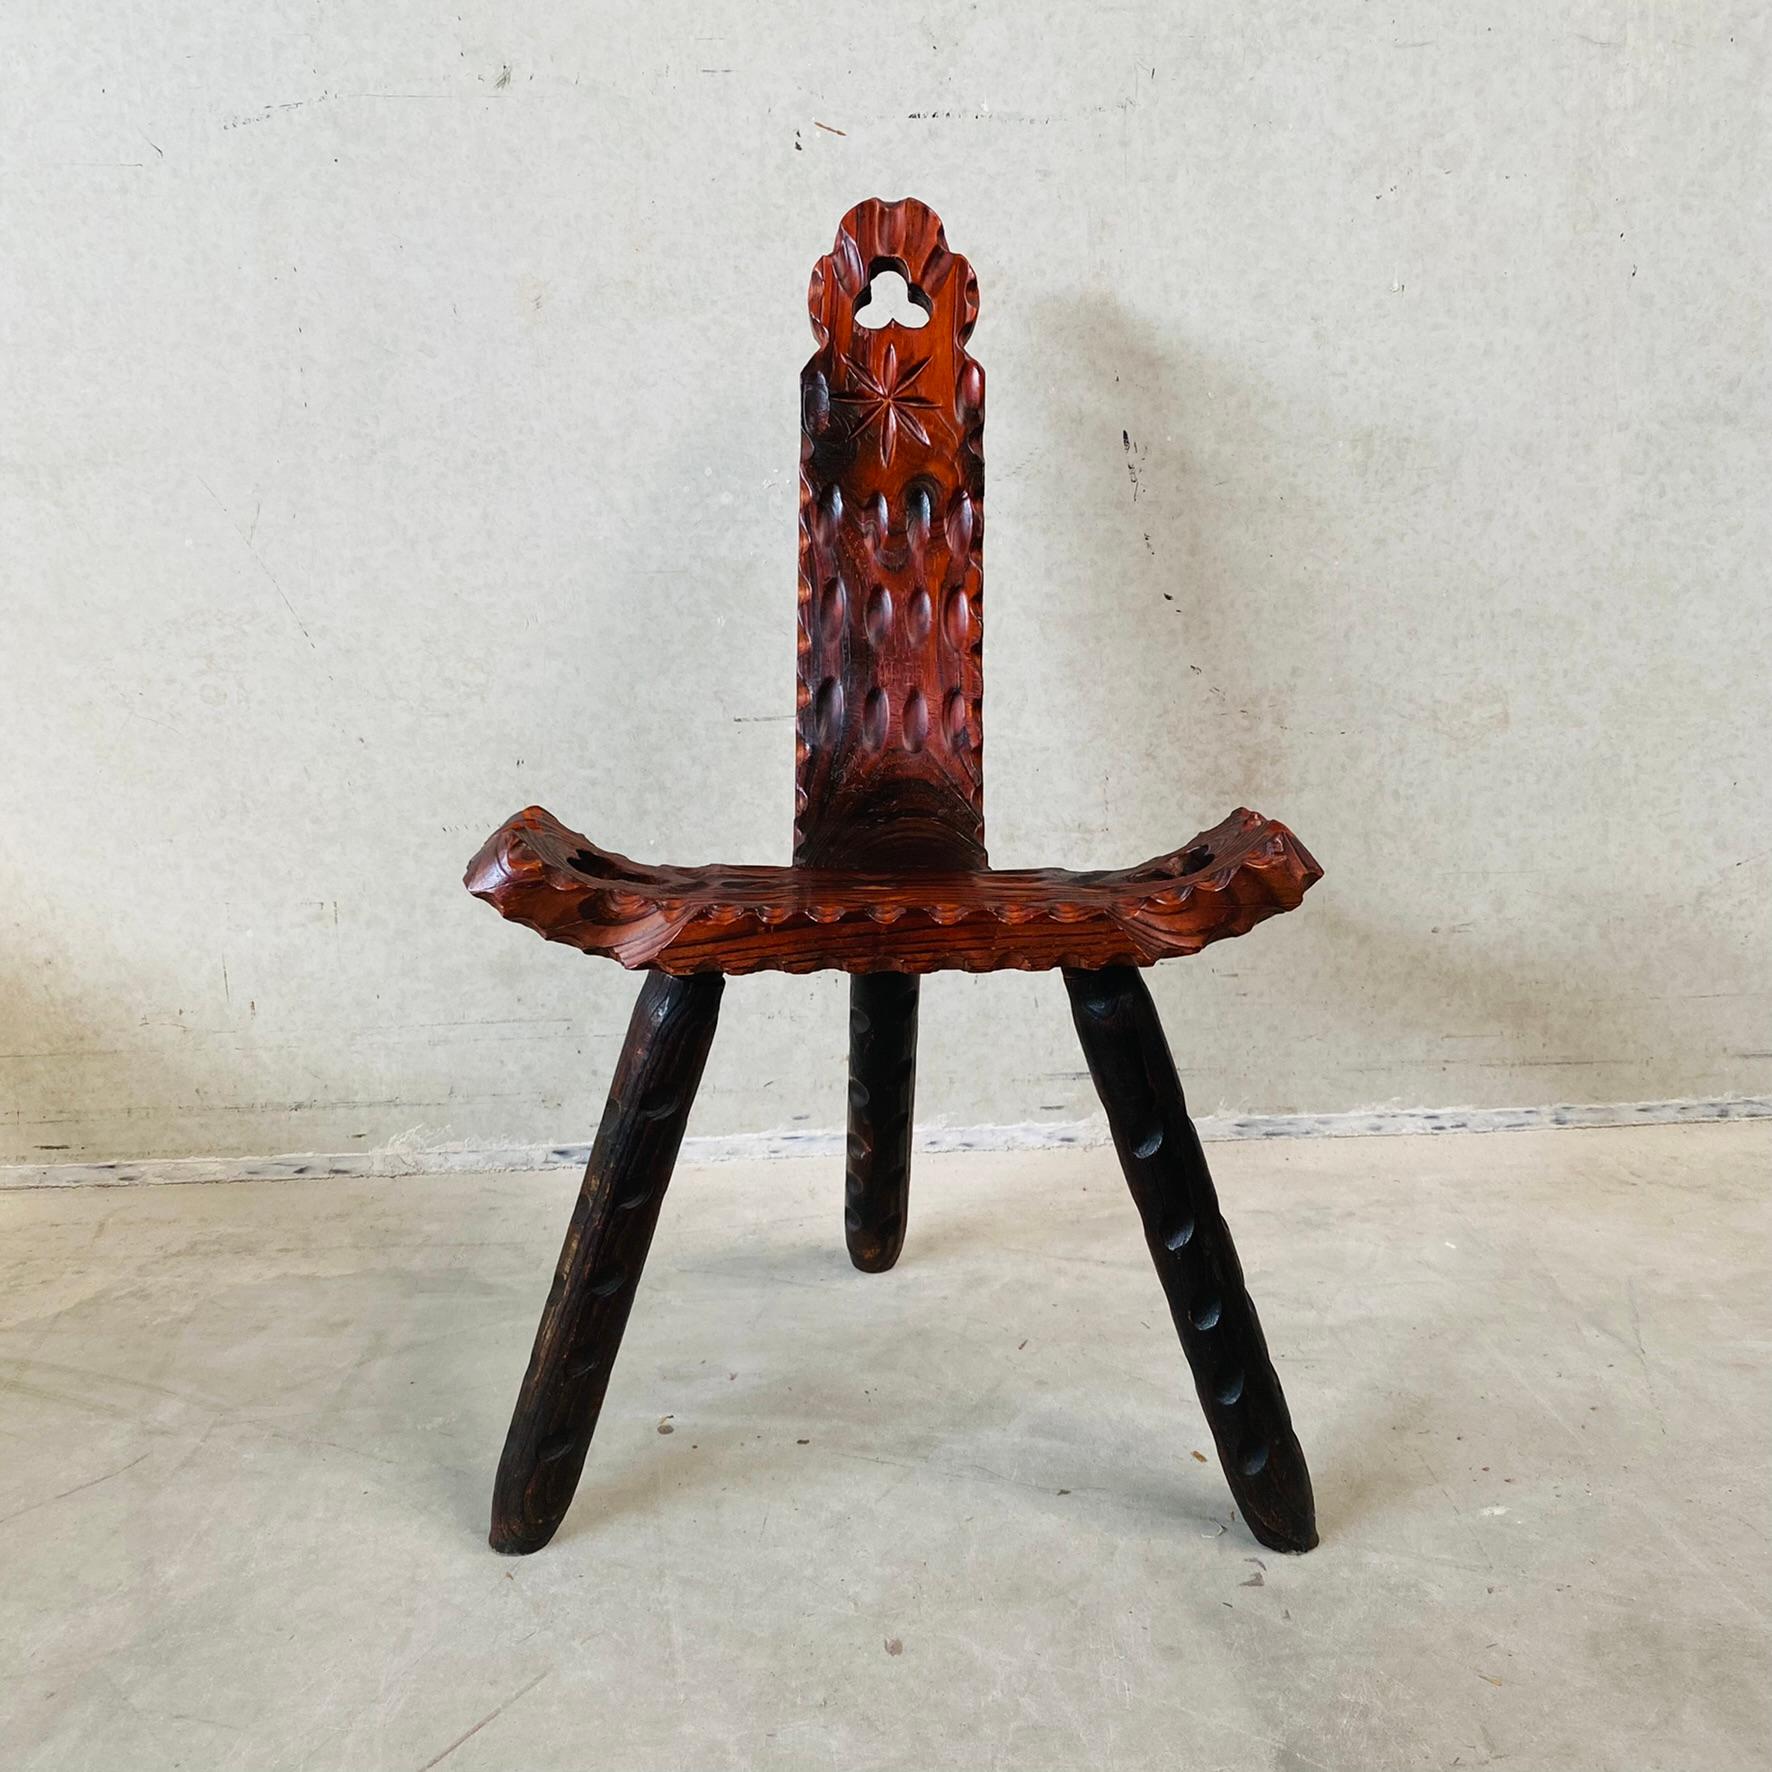 Der exquisite brutalistische spanische skulpturale Dreibeinstuhl aus der Mitte des Jahrhunderts von 1950

Möchten Sie Ihrer Einrichtung einen Hauch von einzigartiger Raffinesse verleihen? Der Brutalist Spanish Sculptural Mid-Century Tripod Chair